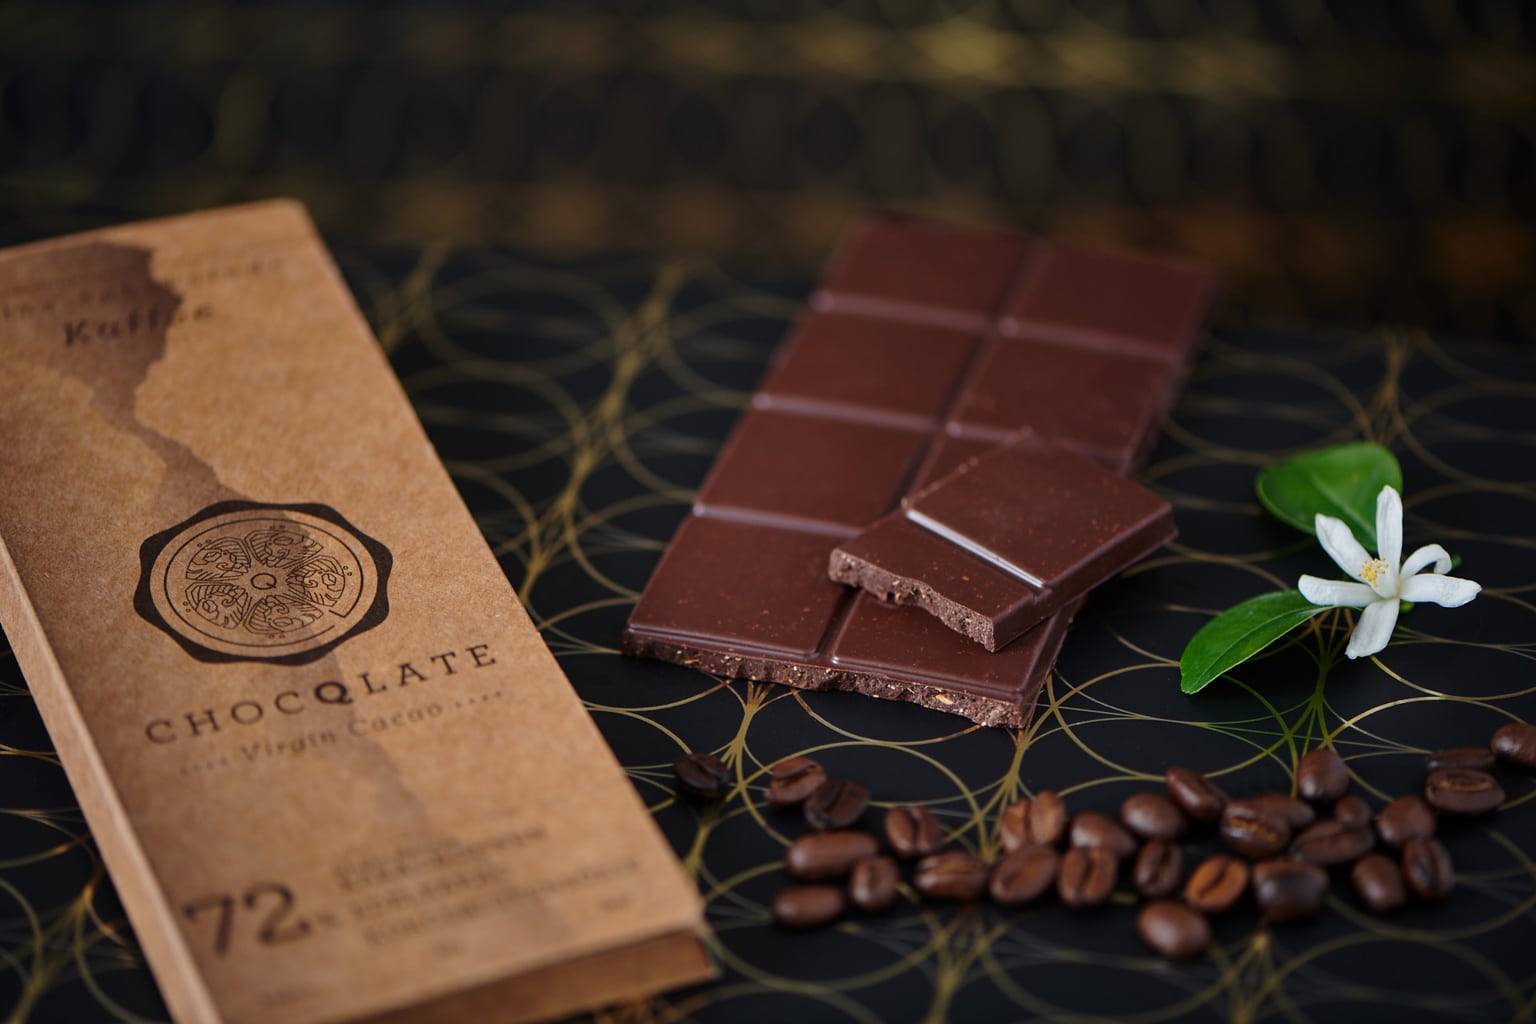 Chocola met 72 procent cacao van Choqlate in München